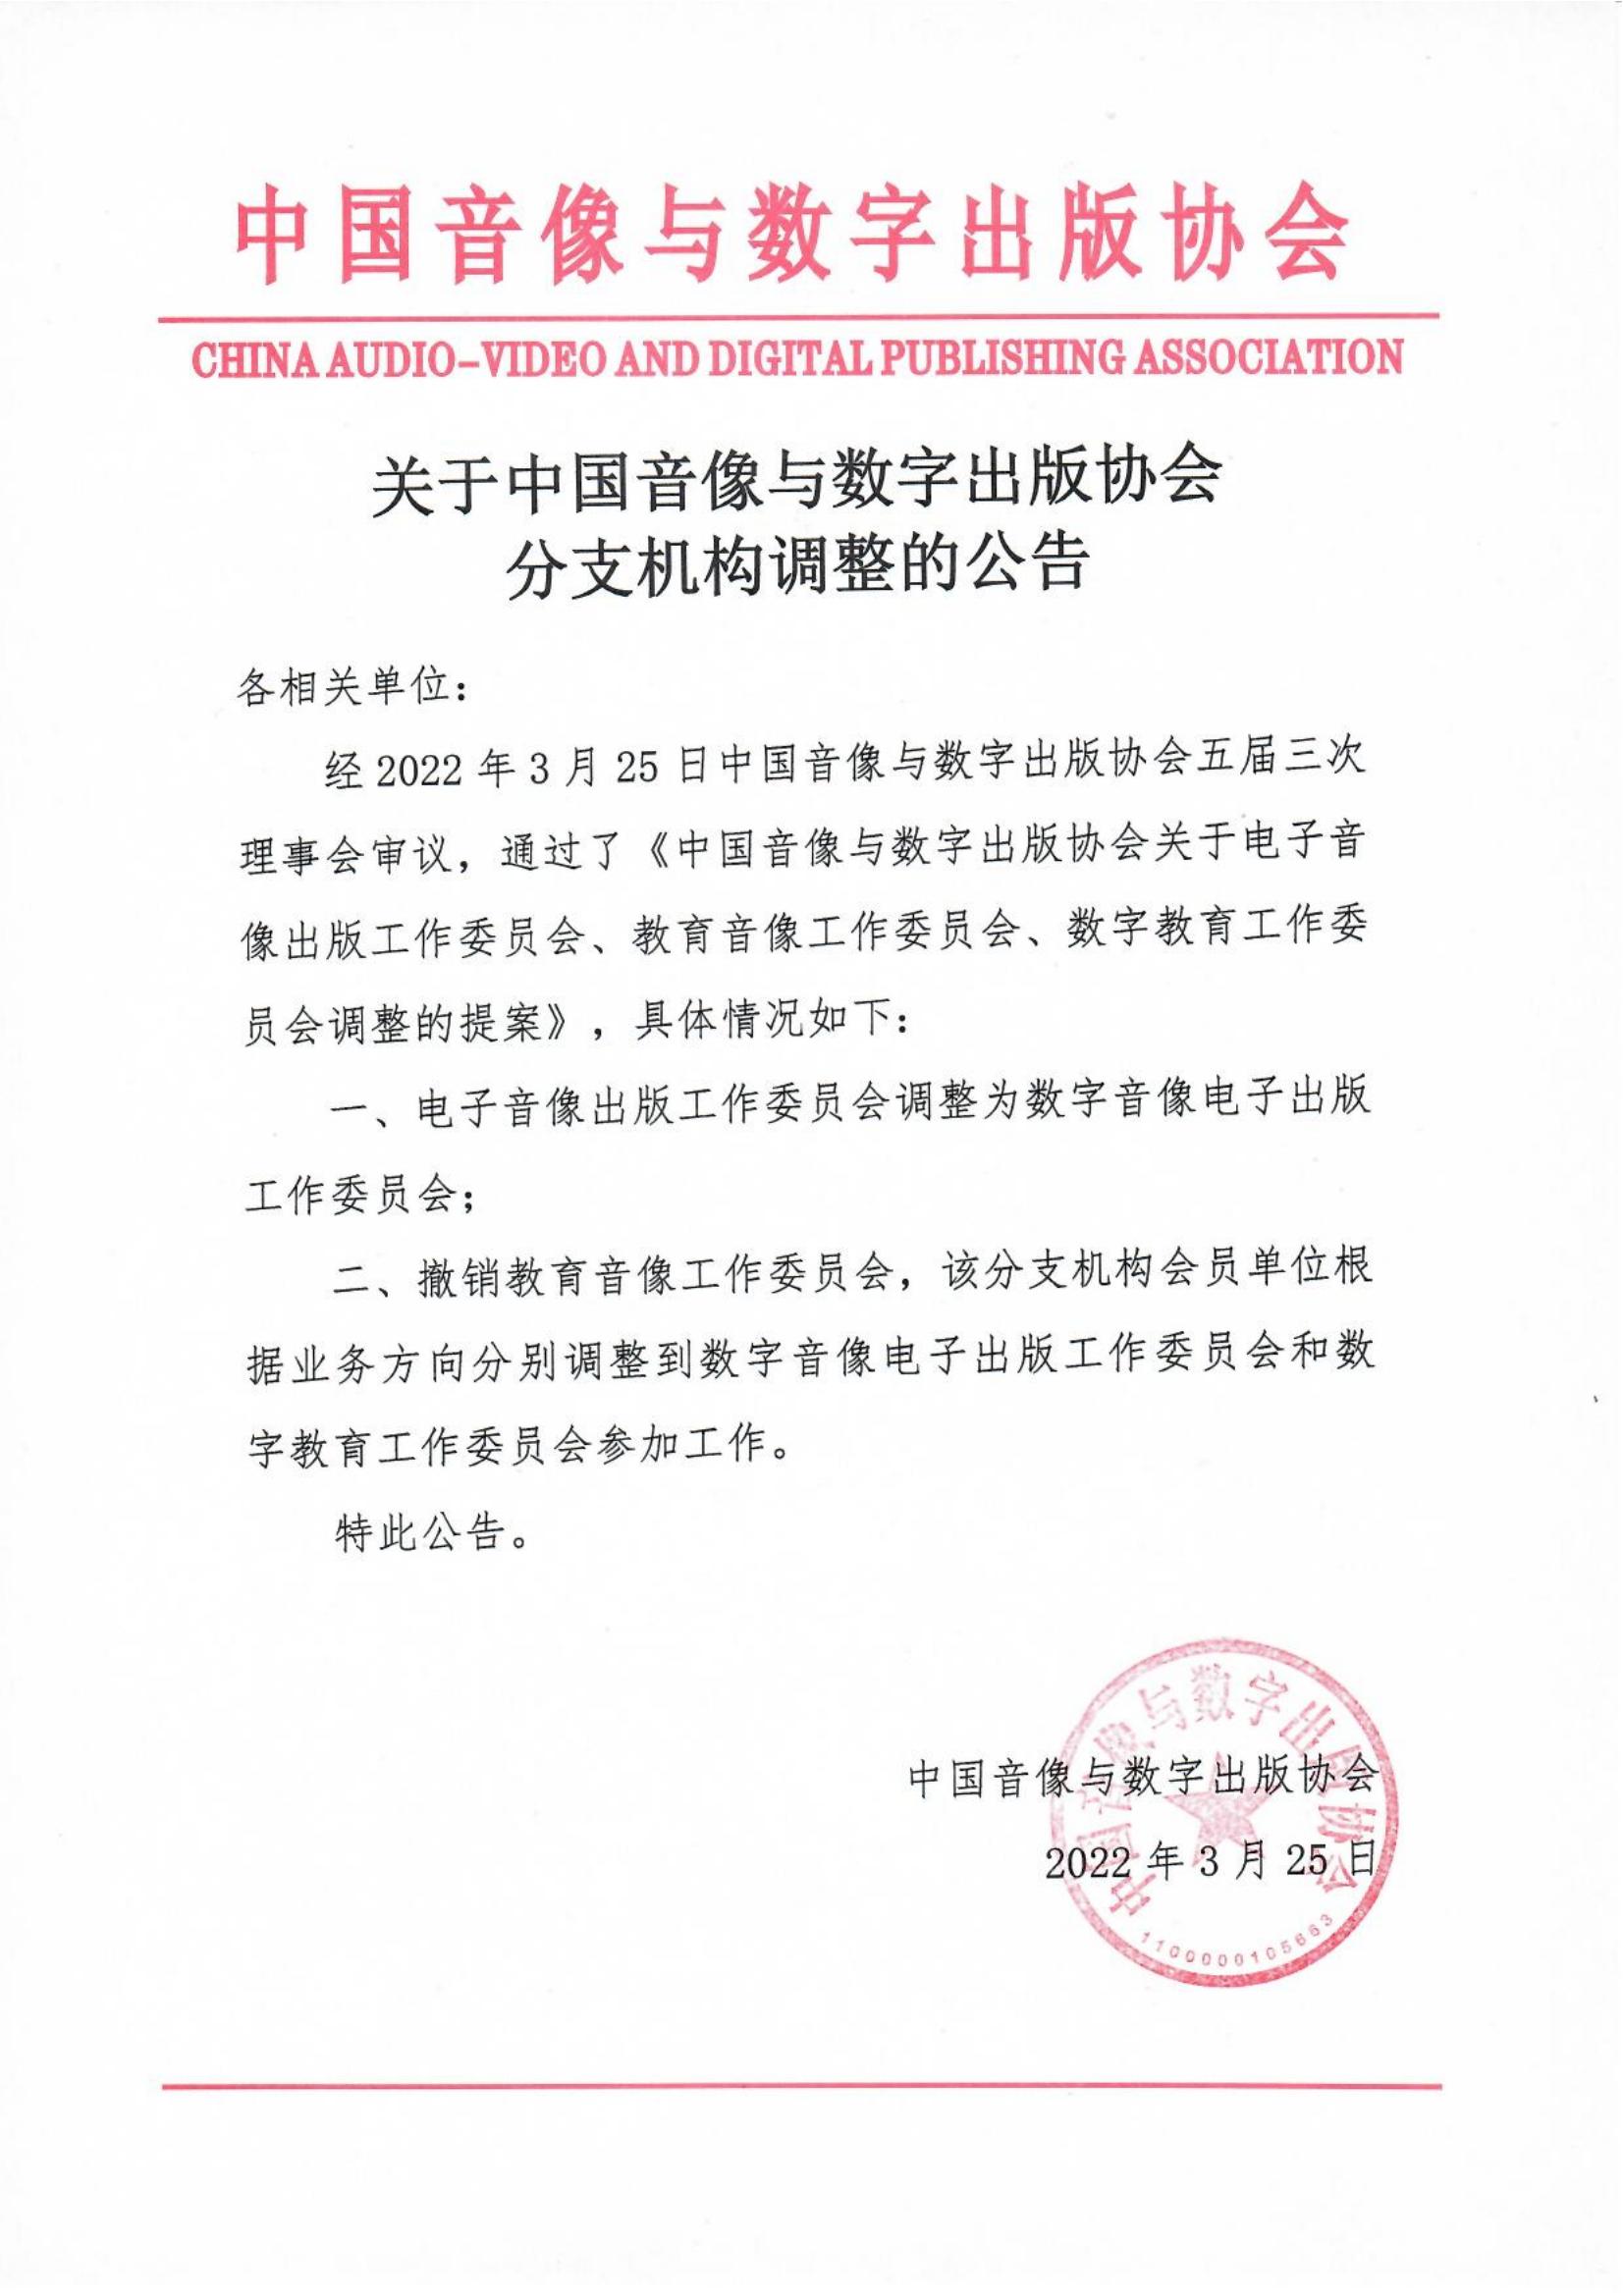 關于中國音像與數字出版協會分支機構調整的公告_00.jpg